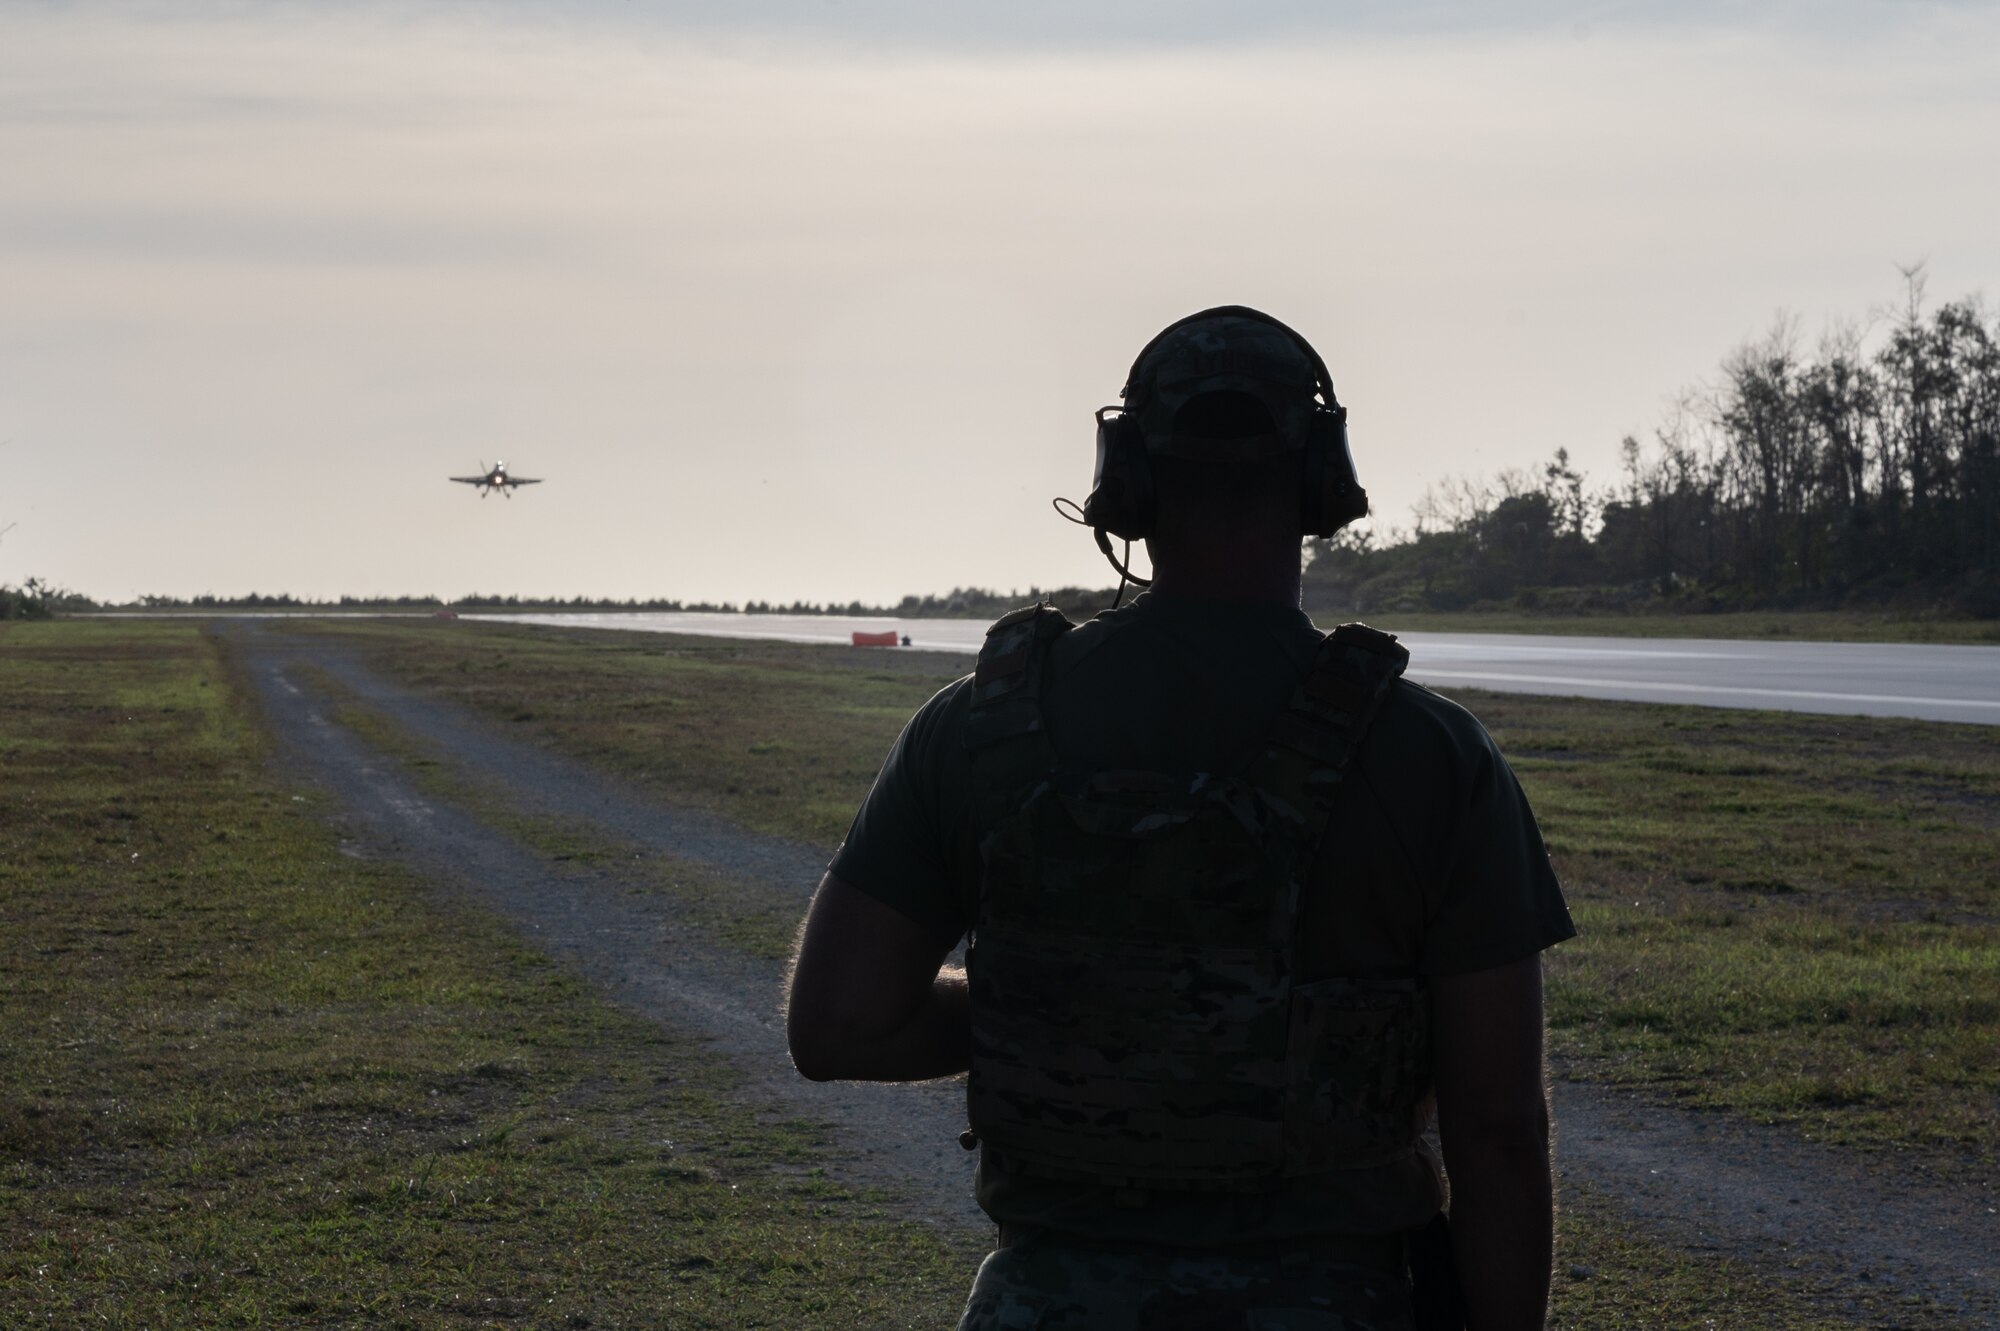 An ATC Airman watches an aircraft land.